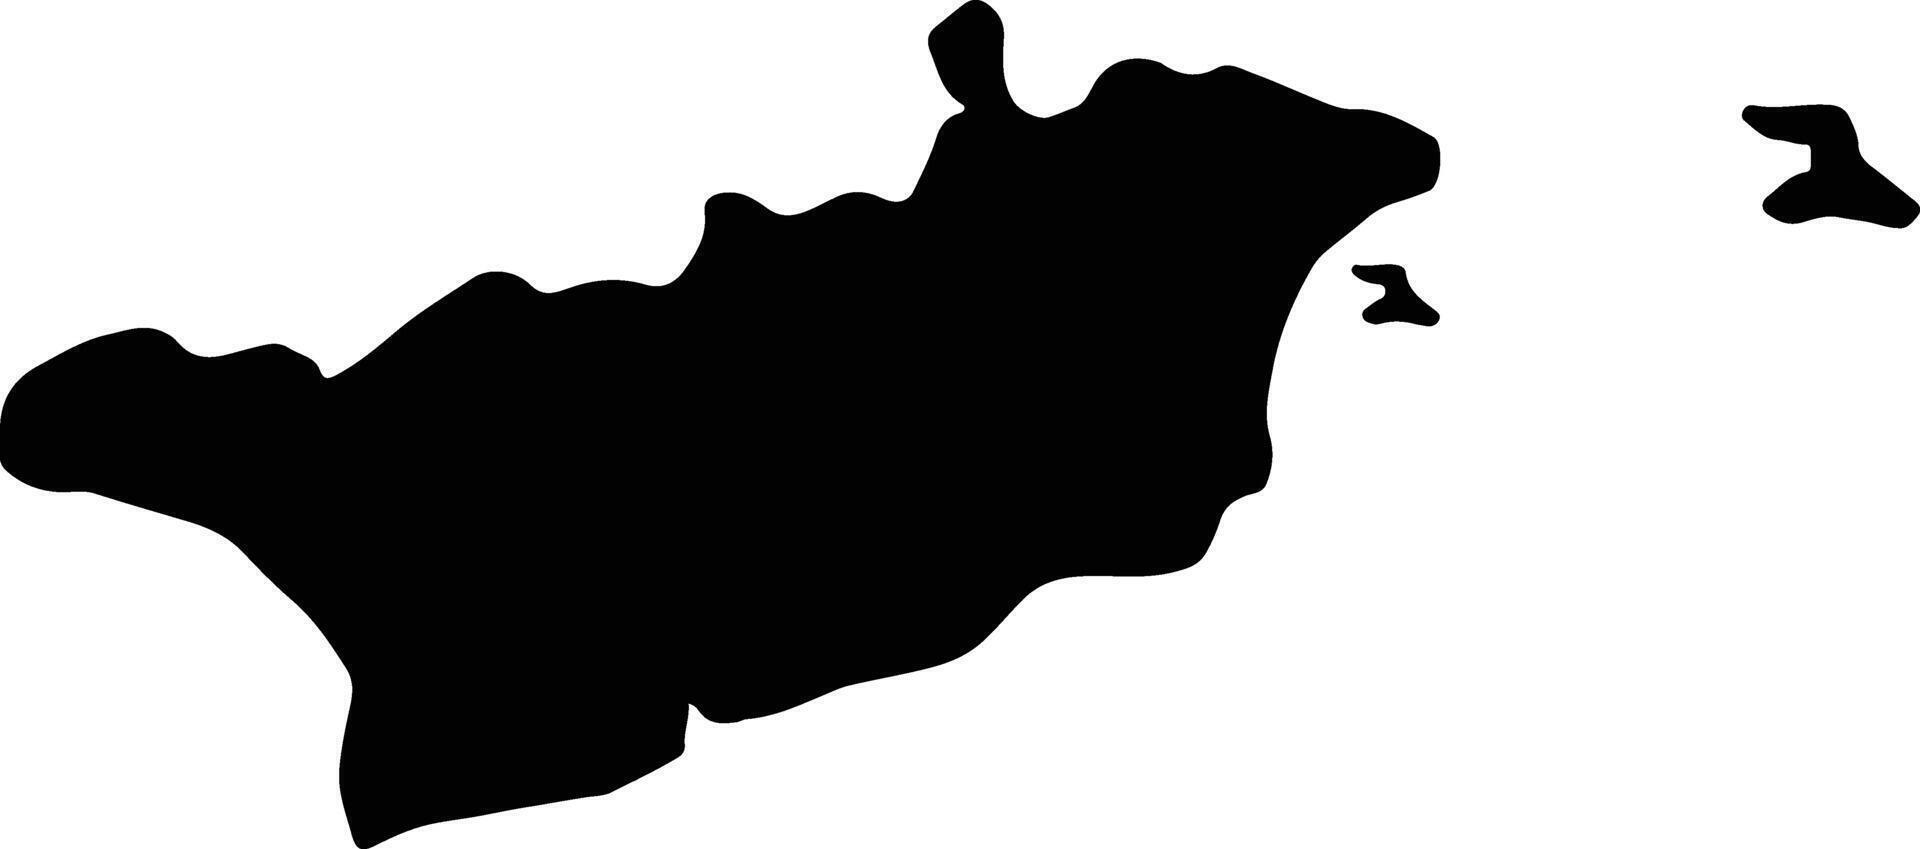 larnaca Cipro silhouette carta geografica vettore